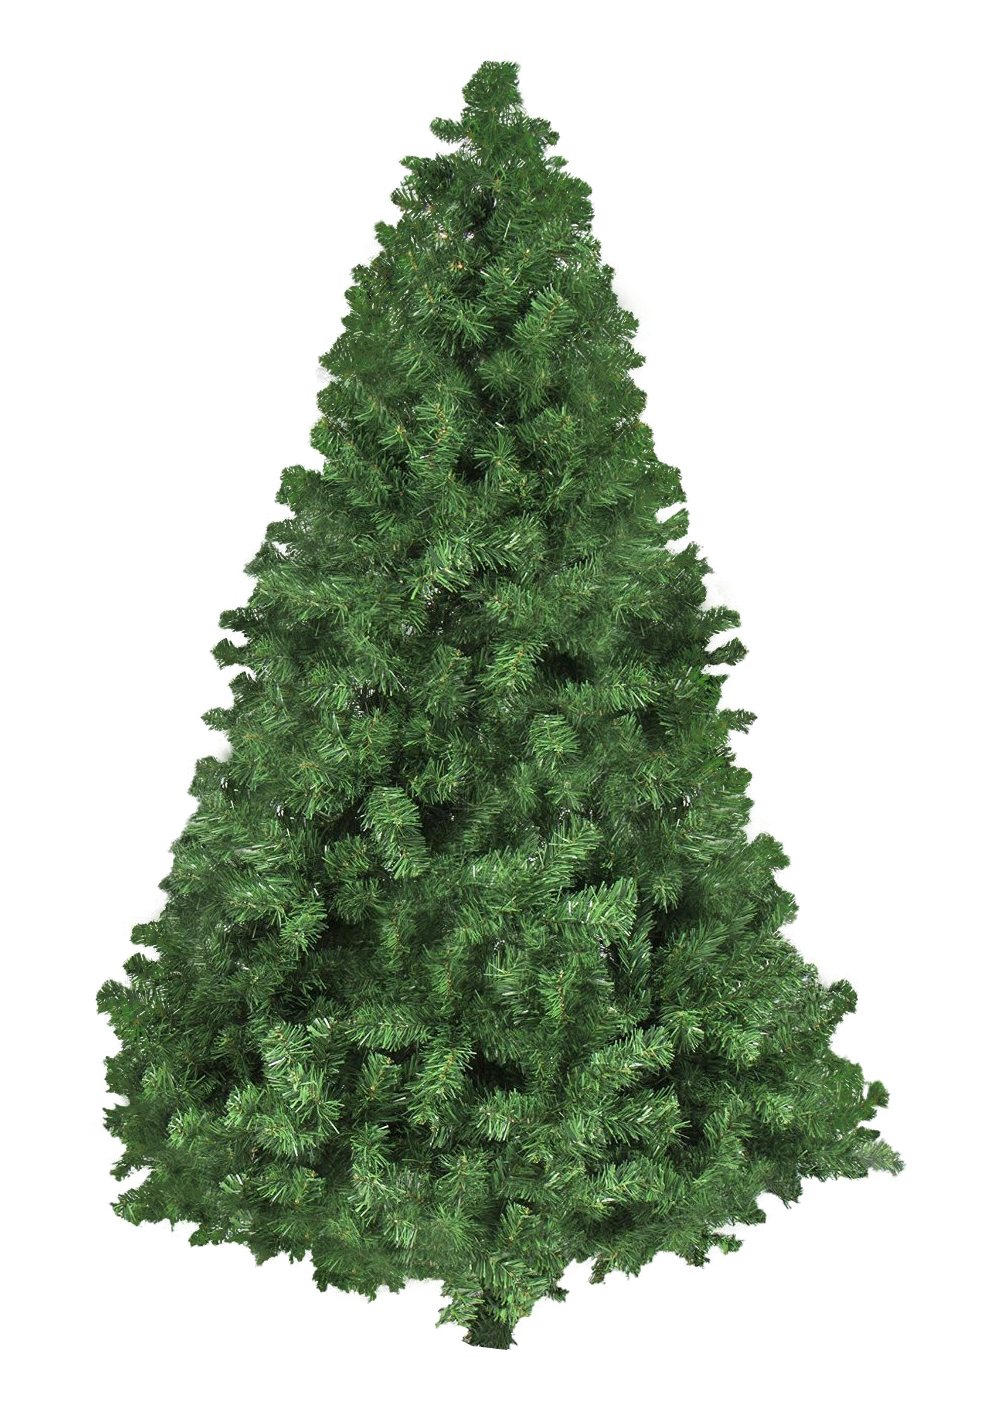 Christmas Tree PNG Image